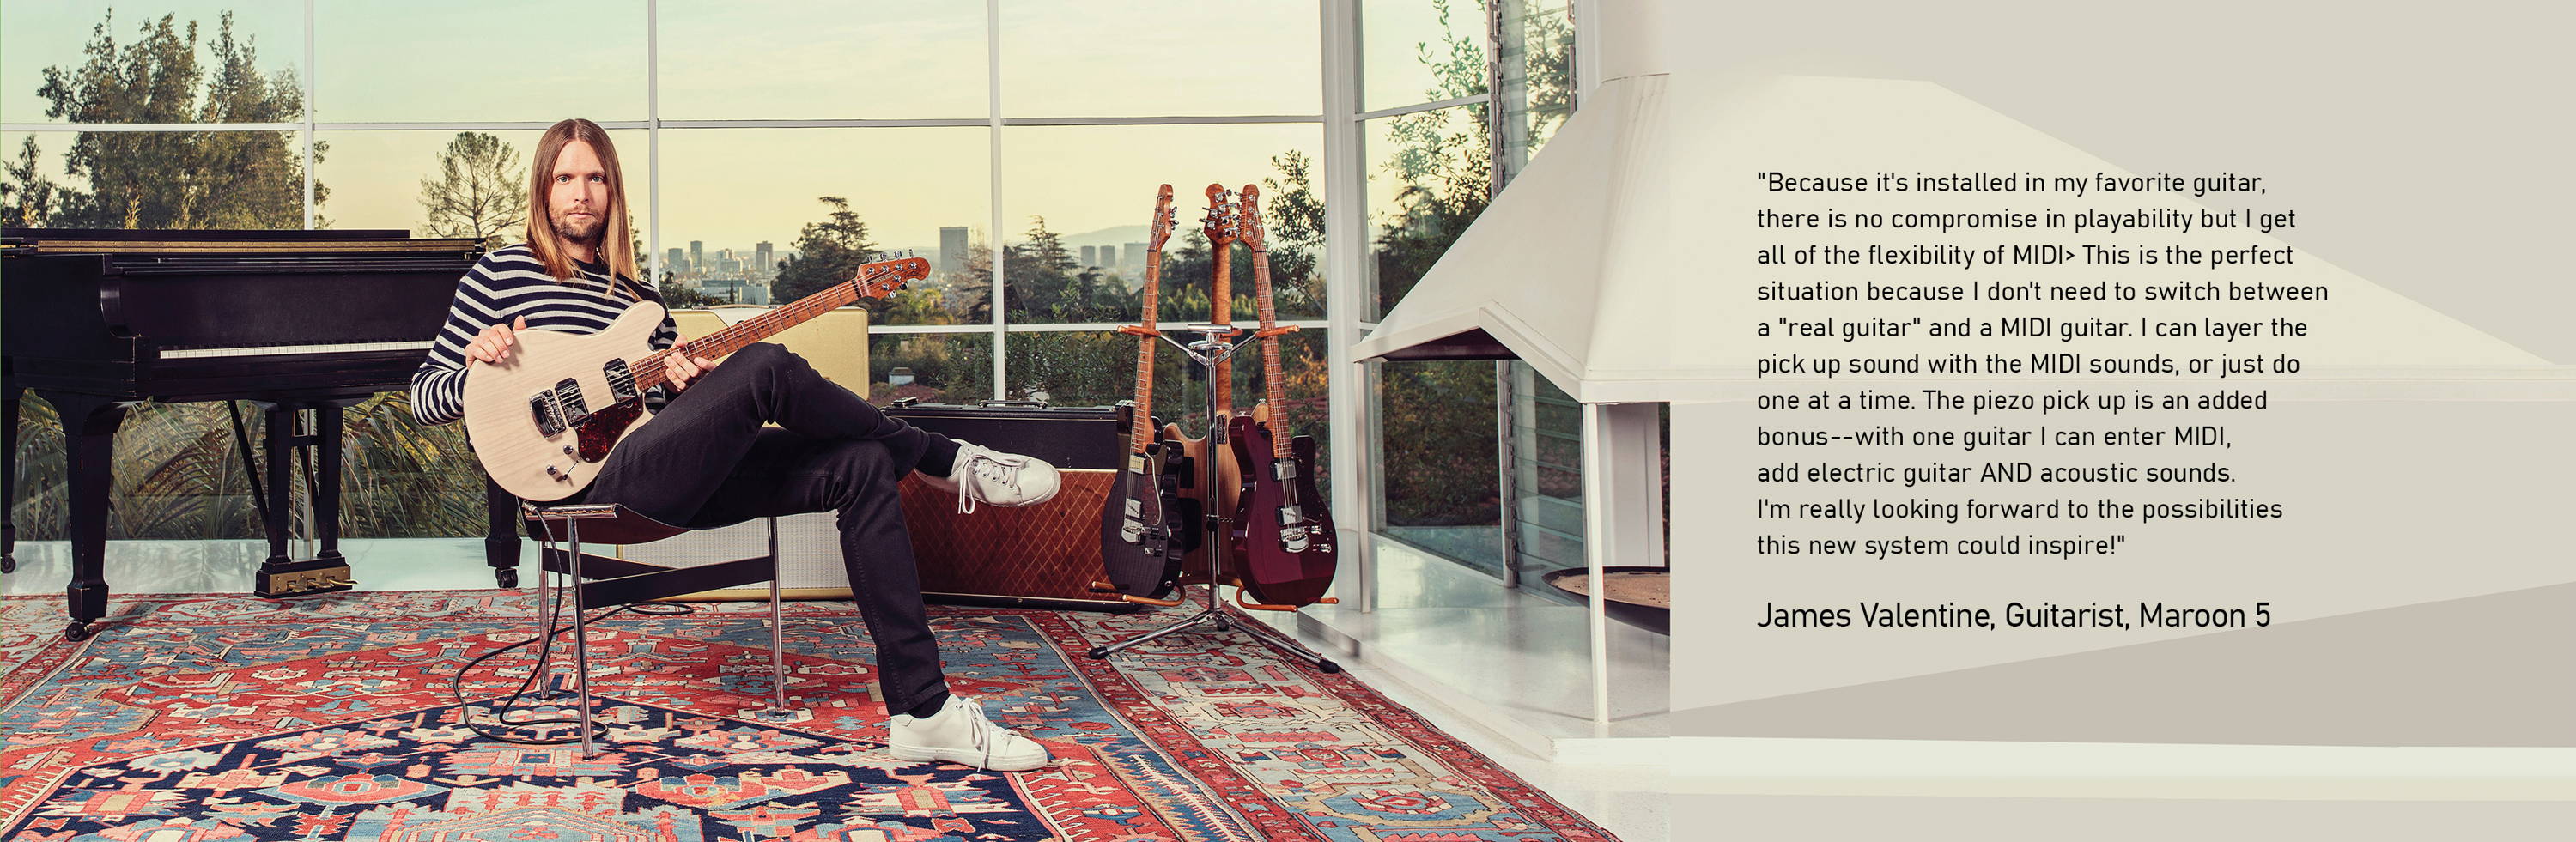 James Valentine, Guitarist, Maroon 5